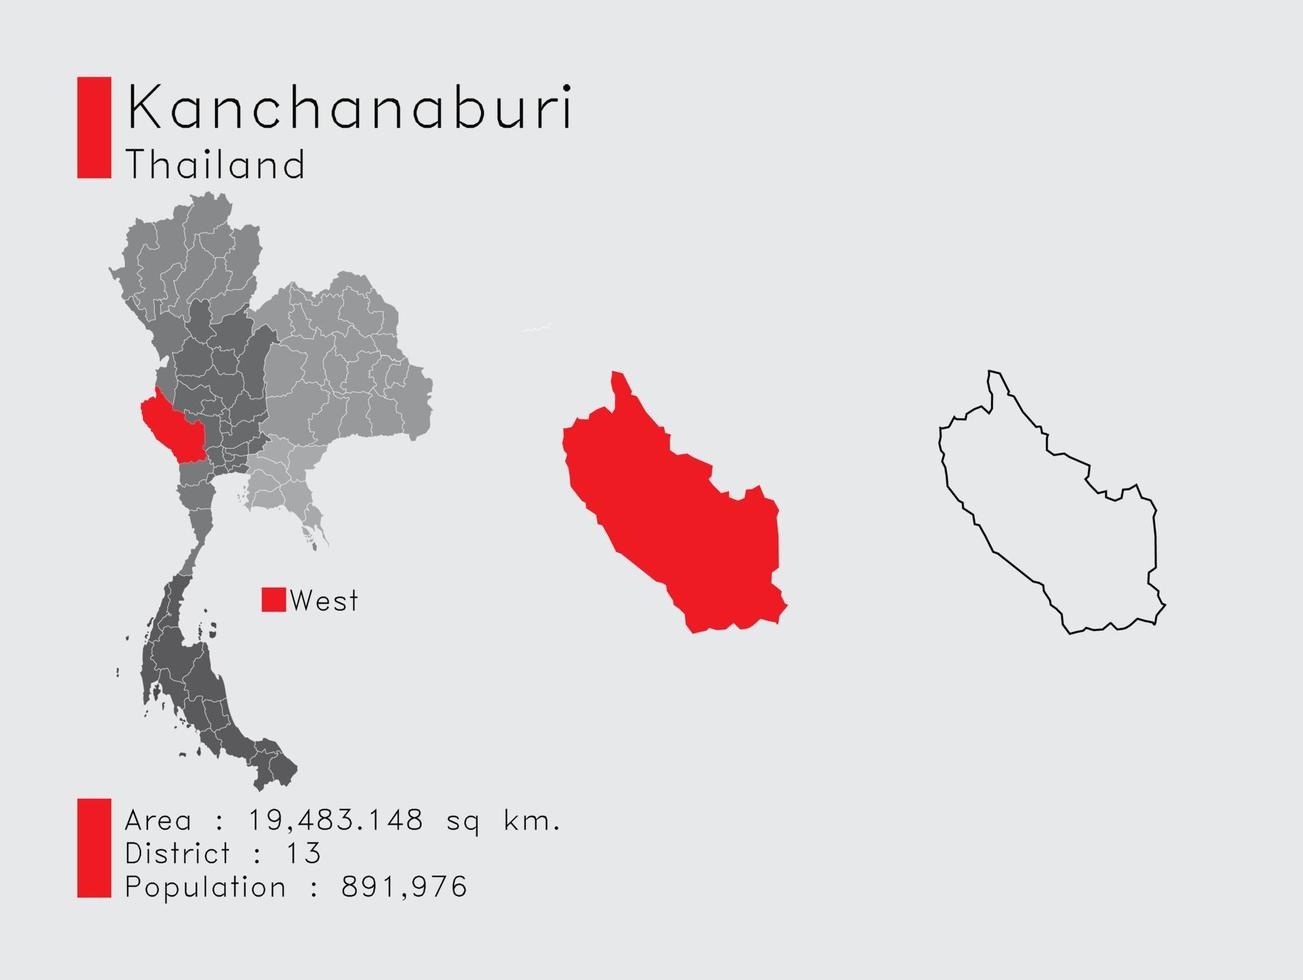 kanchanaburi-position in thailand eine reihe von infografikelementen für die provinz. und Bereich Bezirk Bevölkerung und Gliederung. Vektor mit grauem Hintergrund.